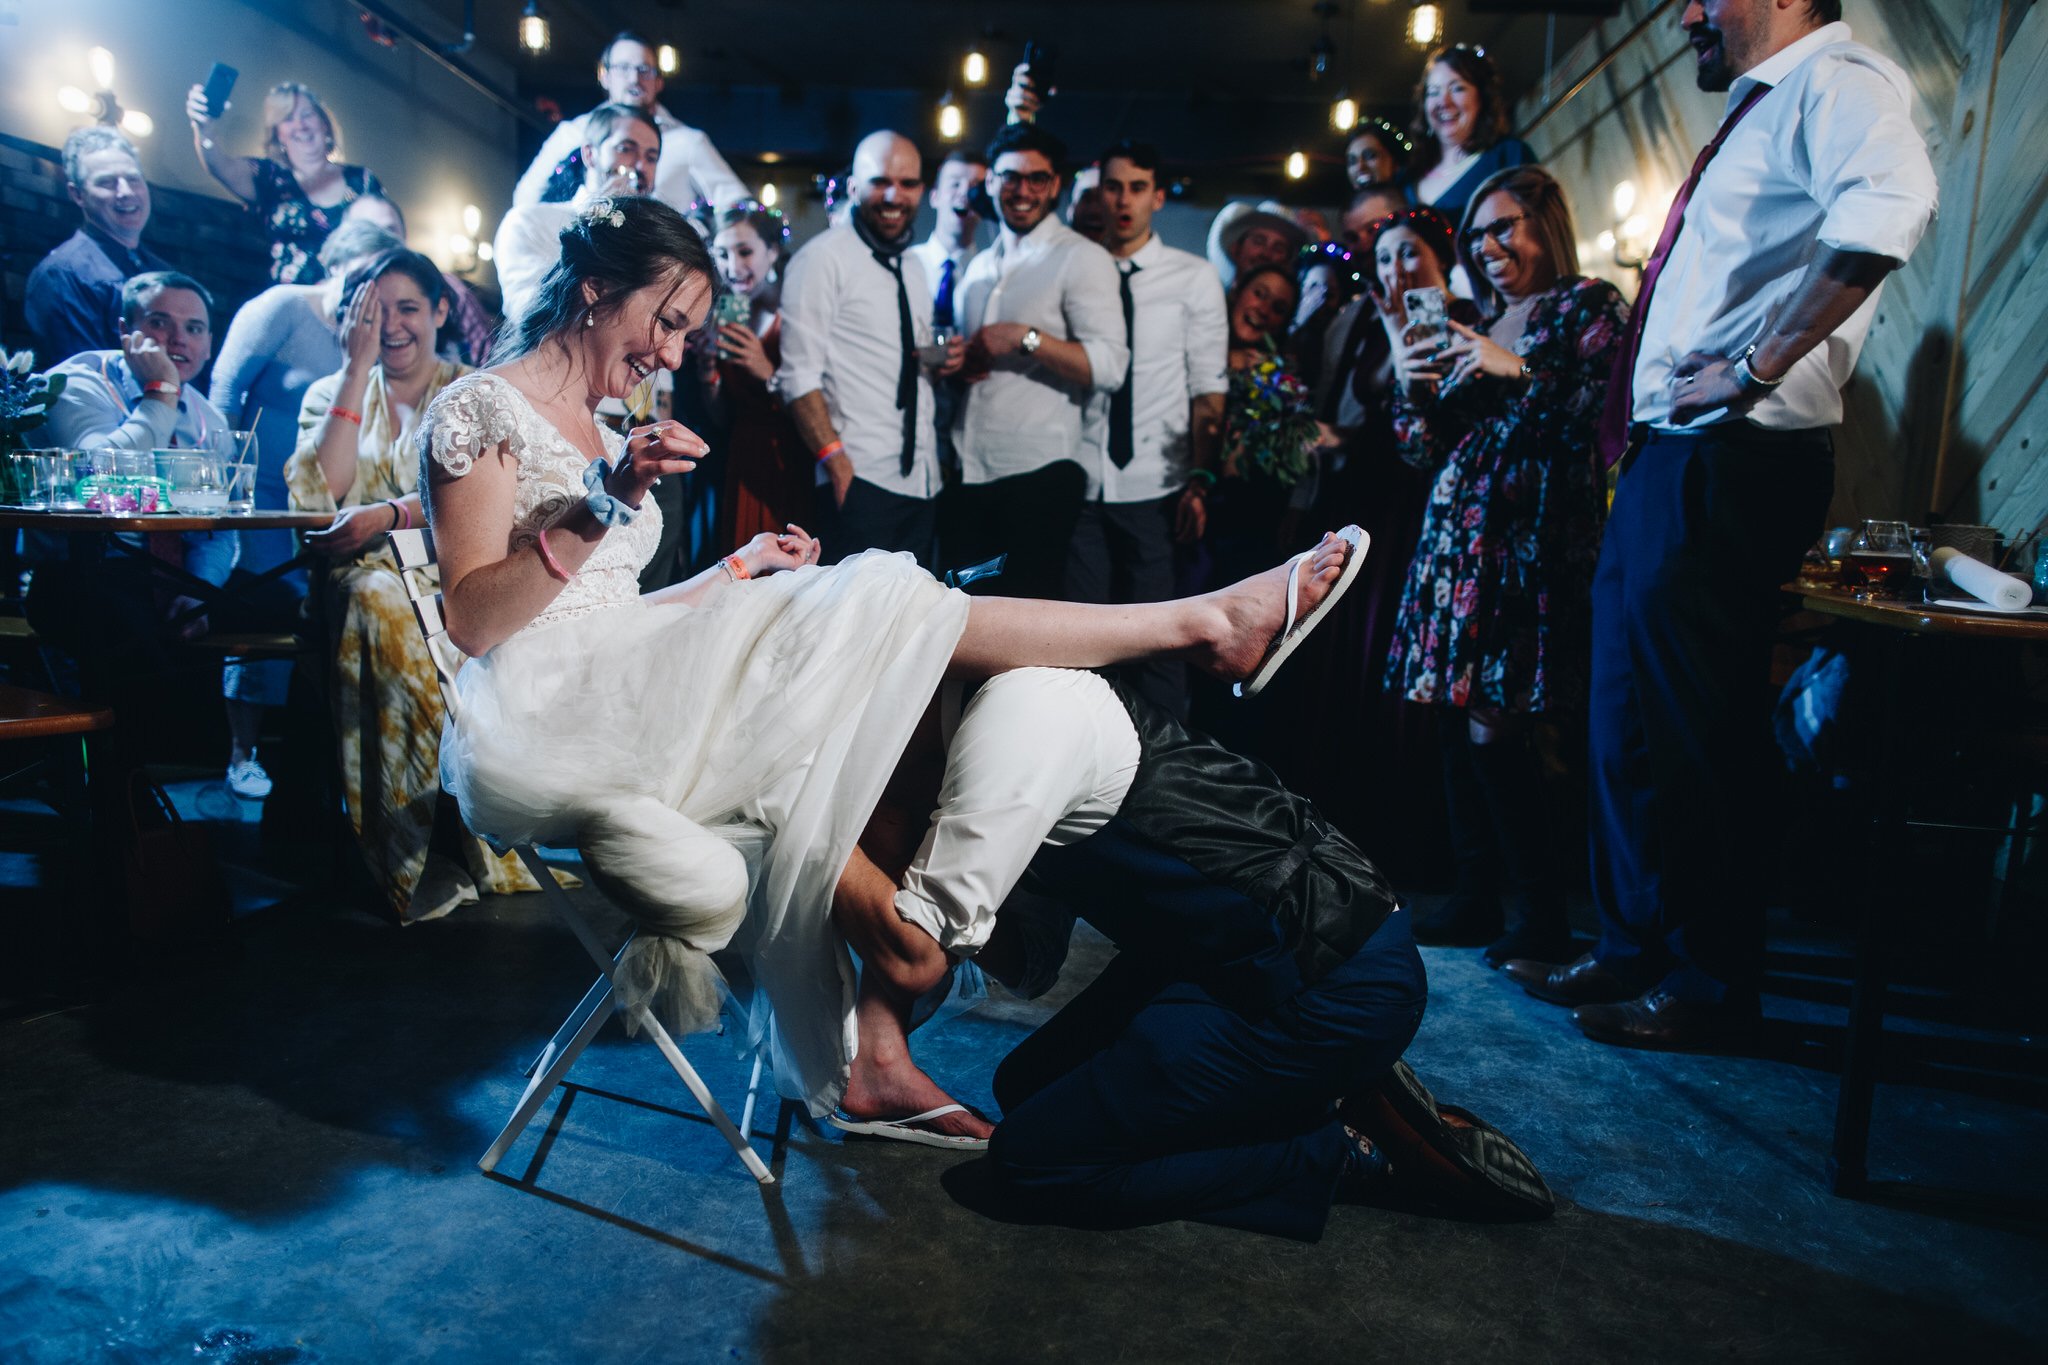 Colorado-wedding-photographer-2021-review-61.jpg